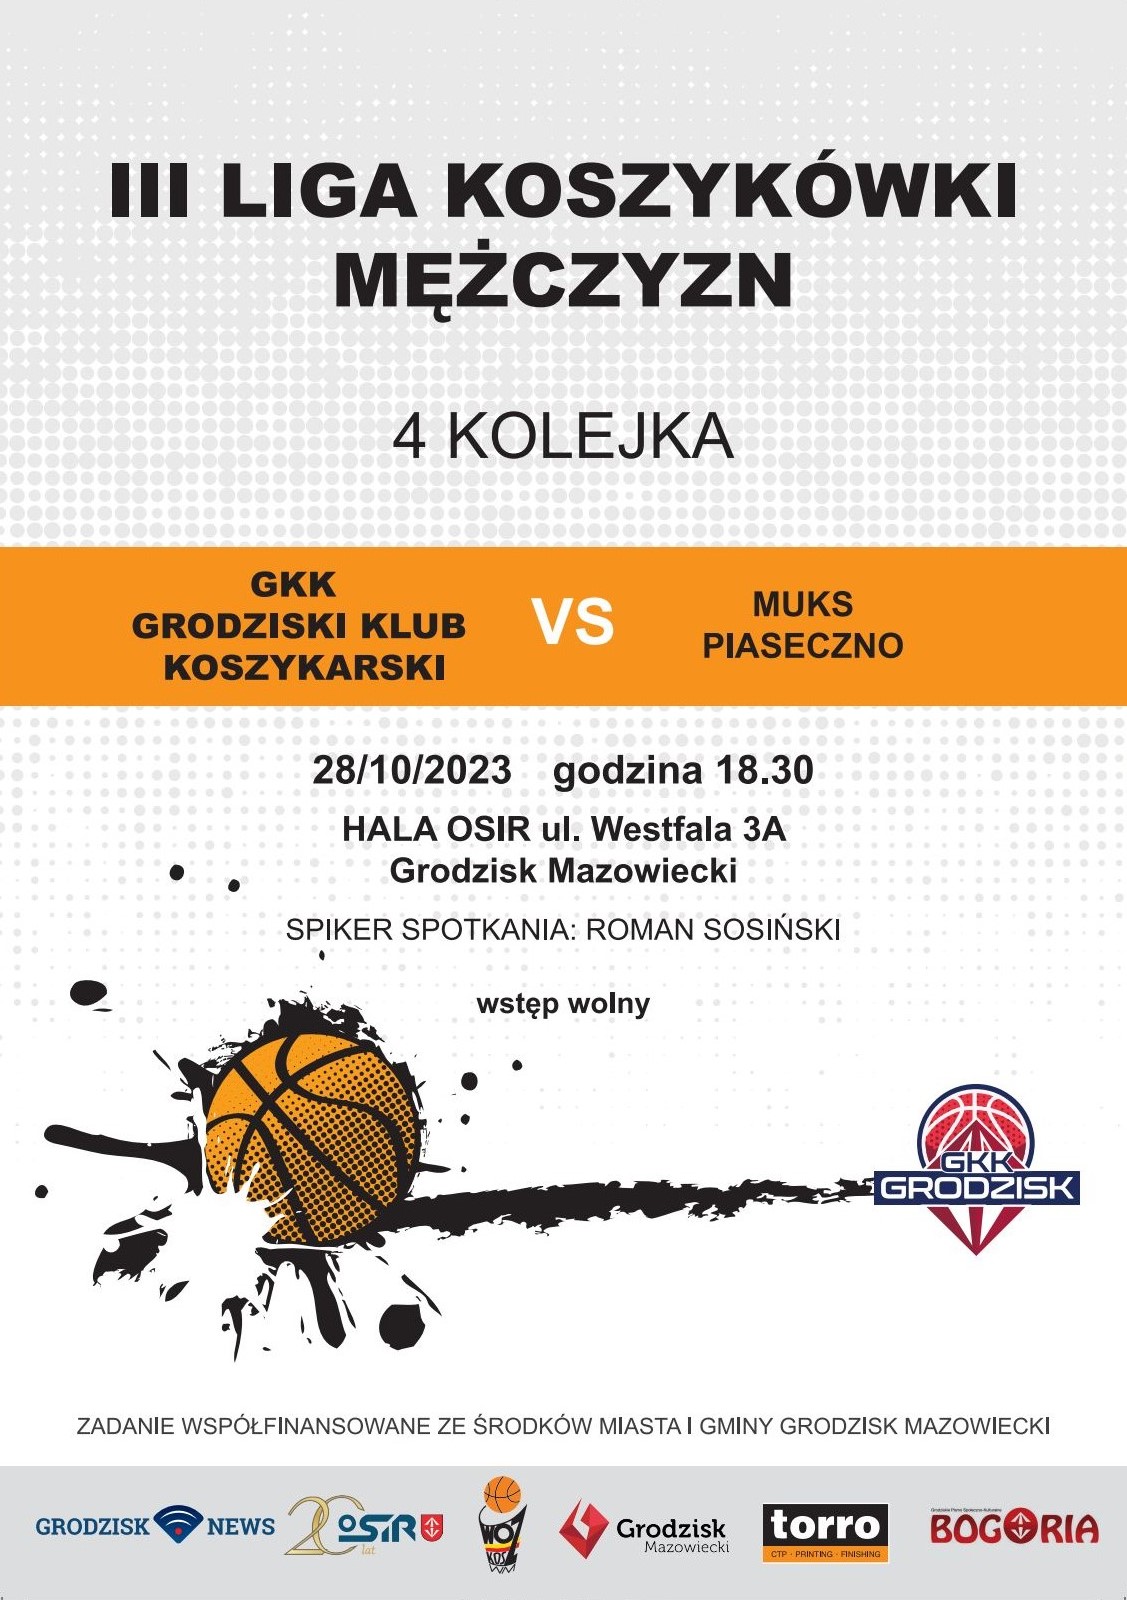 III liga koszykówki mężczyzn: GKK Grodzisk Mazowiecki vs. MUKS Piaseczno/Grodziska Hala Sportowa